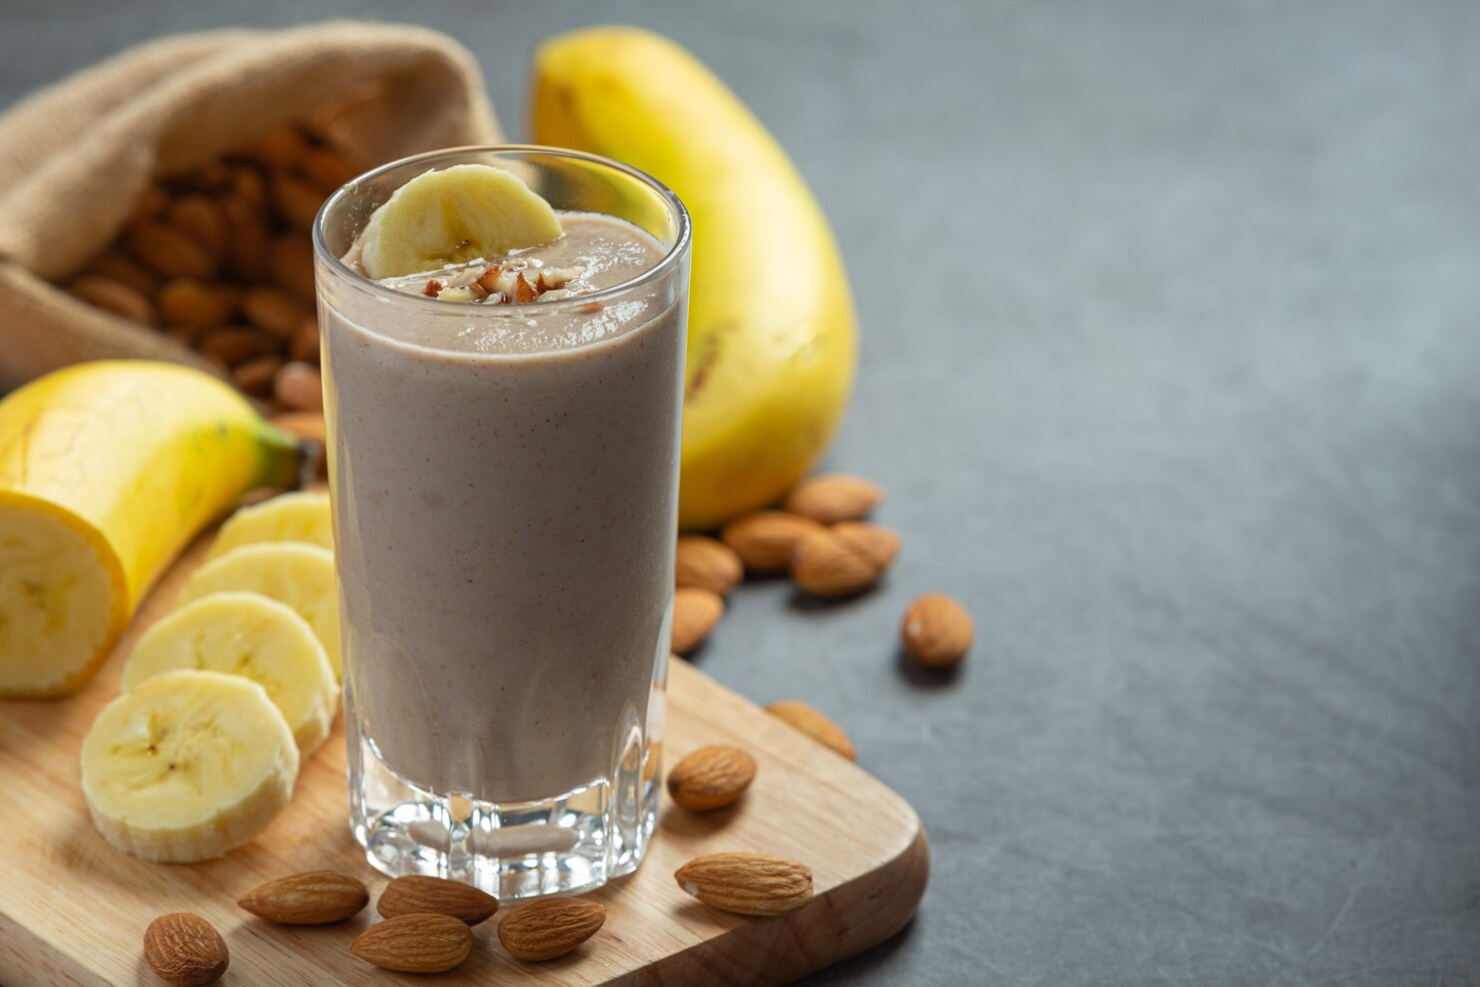 calories in banana shake